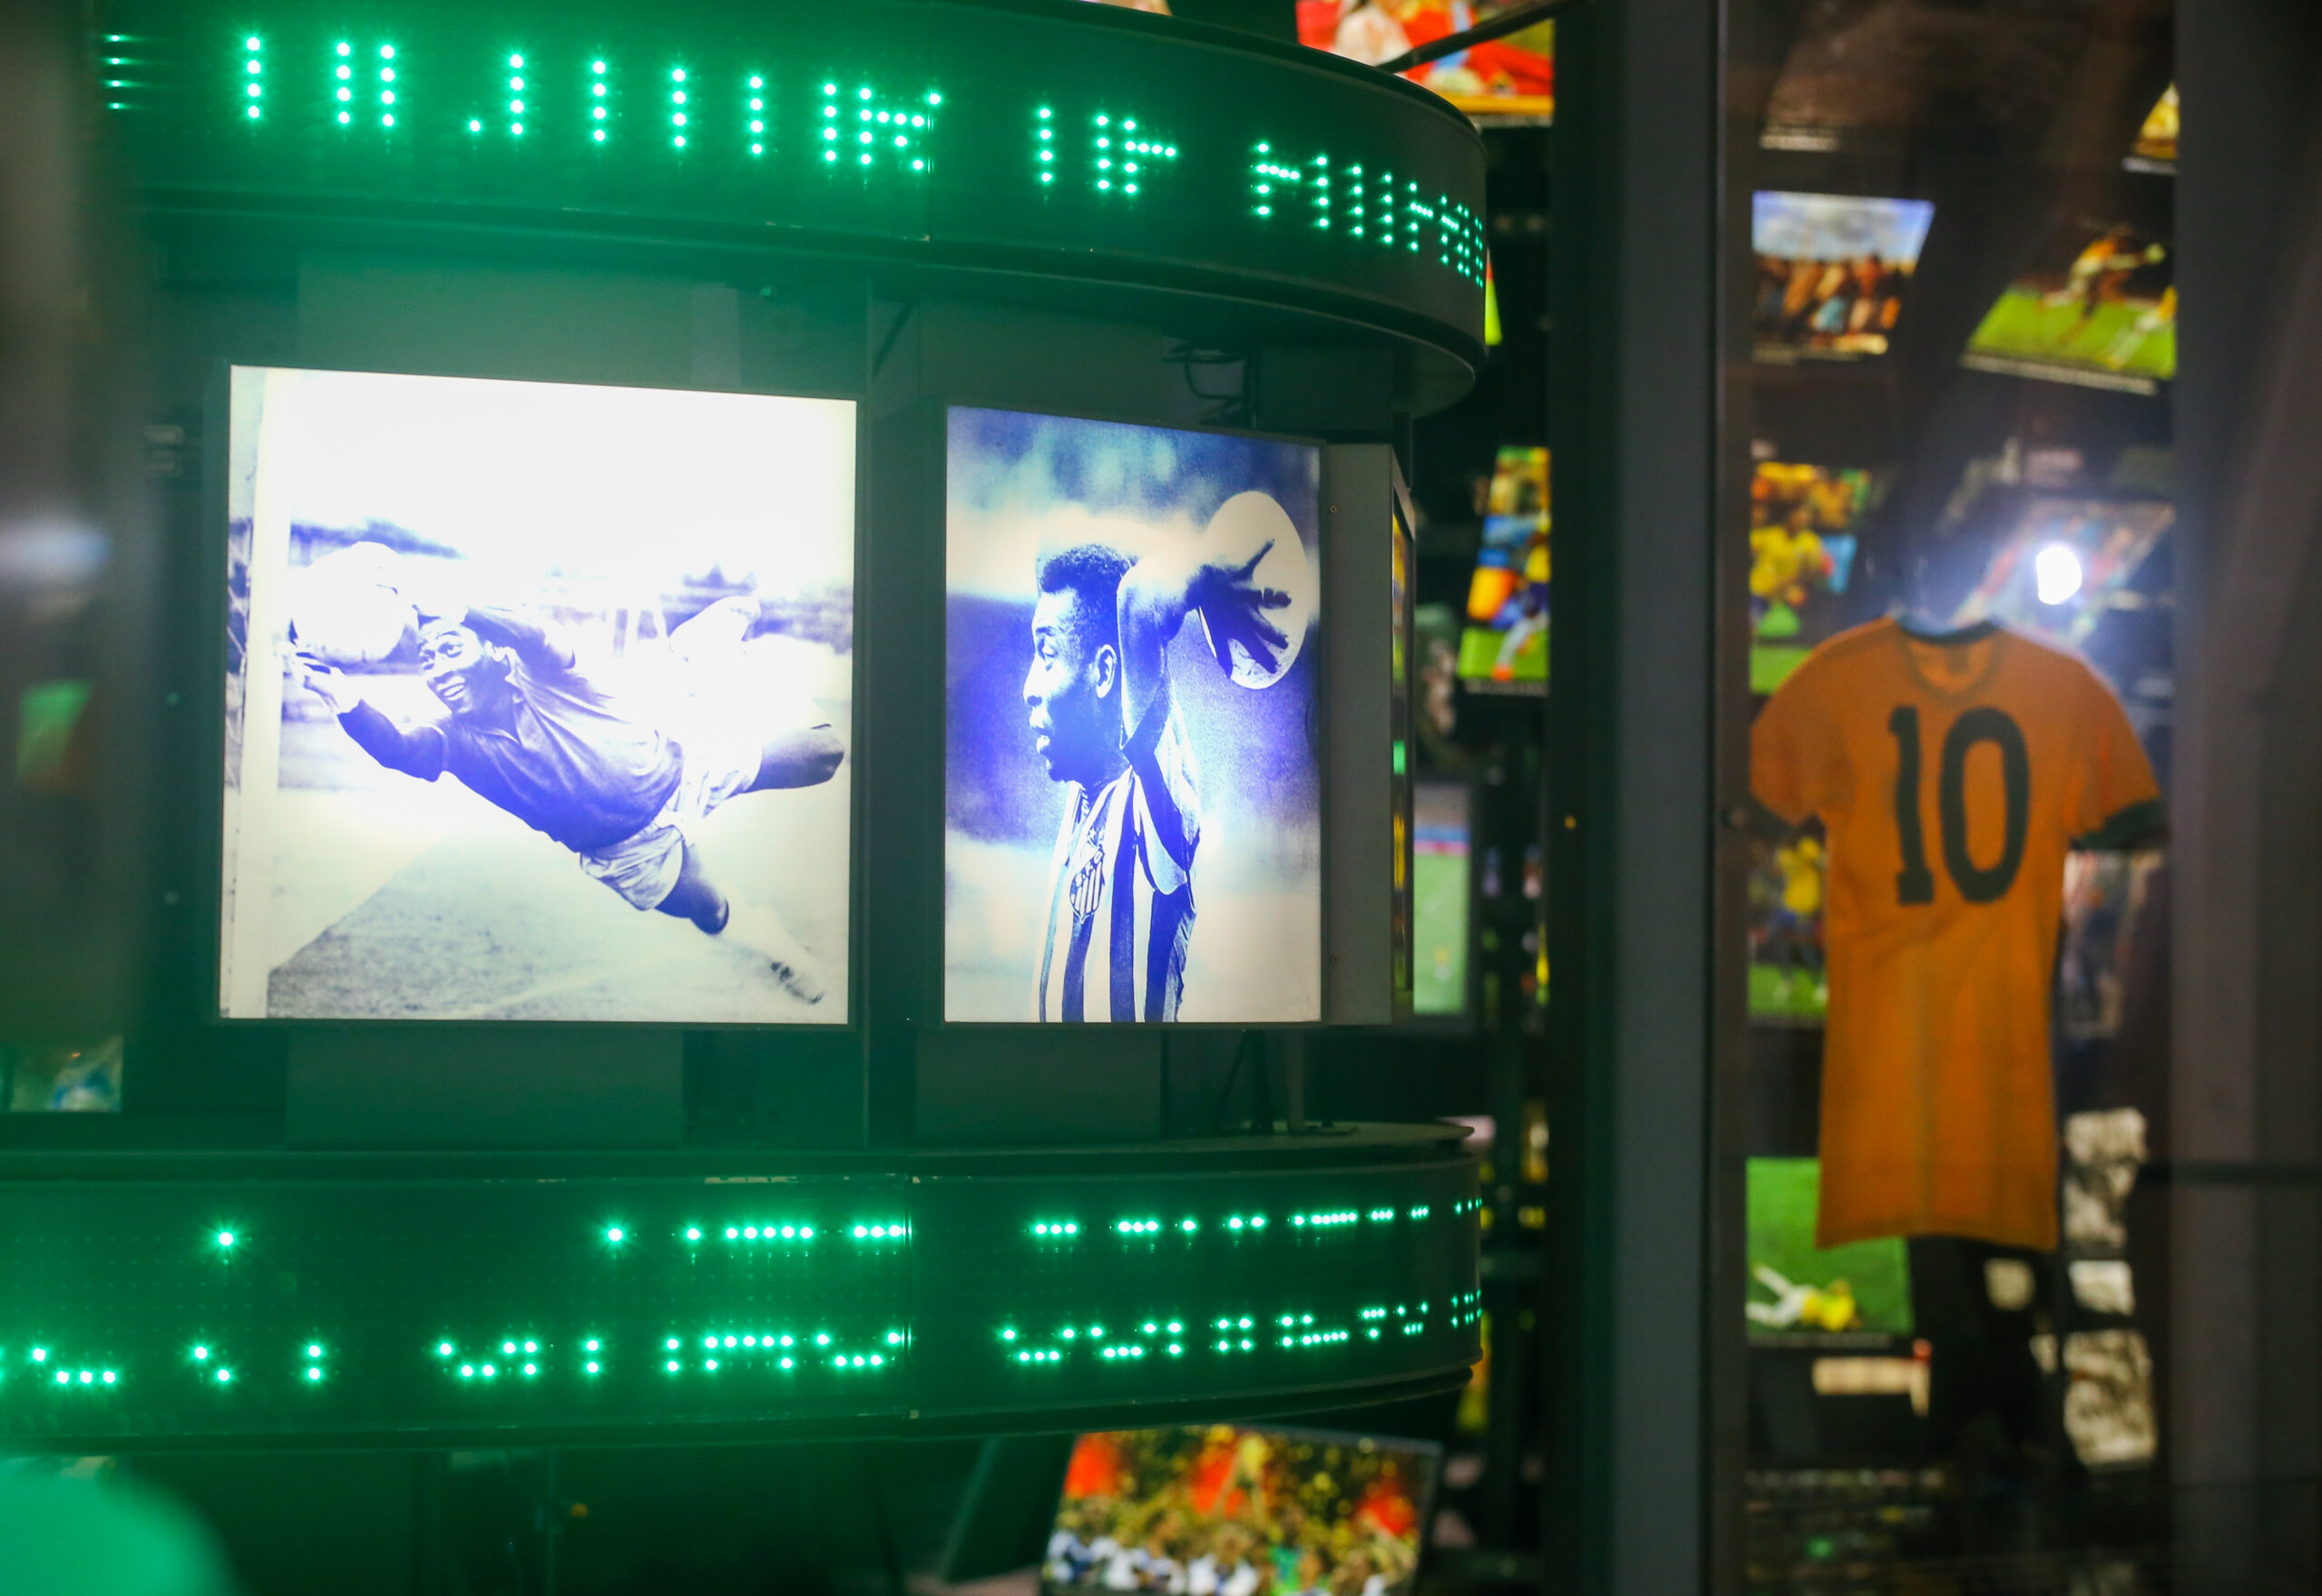 Visor com imagens do Pelé como goleiro, batendo um lateral e a camisa usada por ele na final da copa do mundo de 1970 ao fundo.